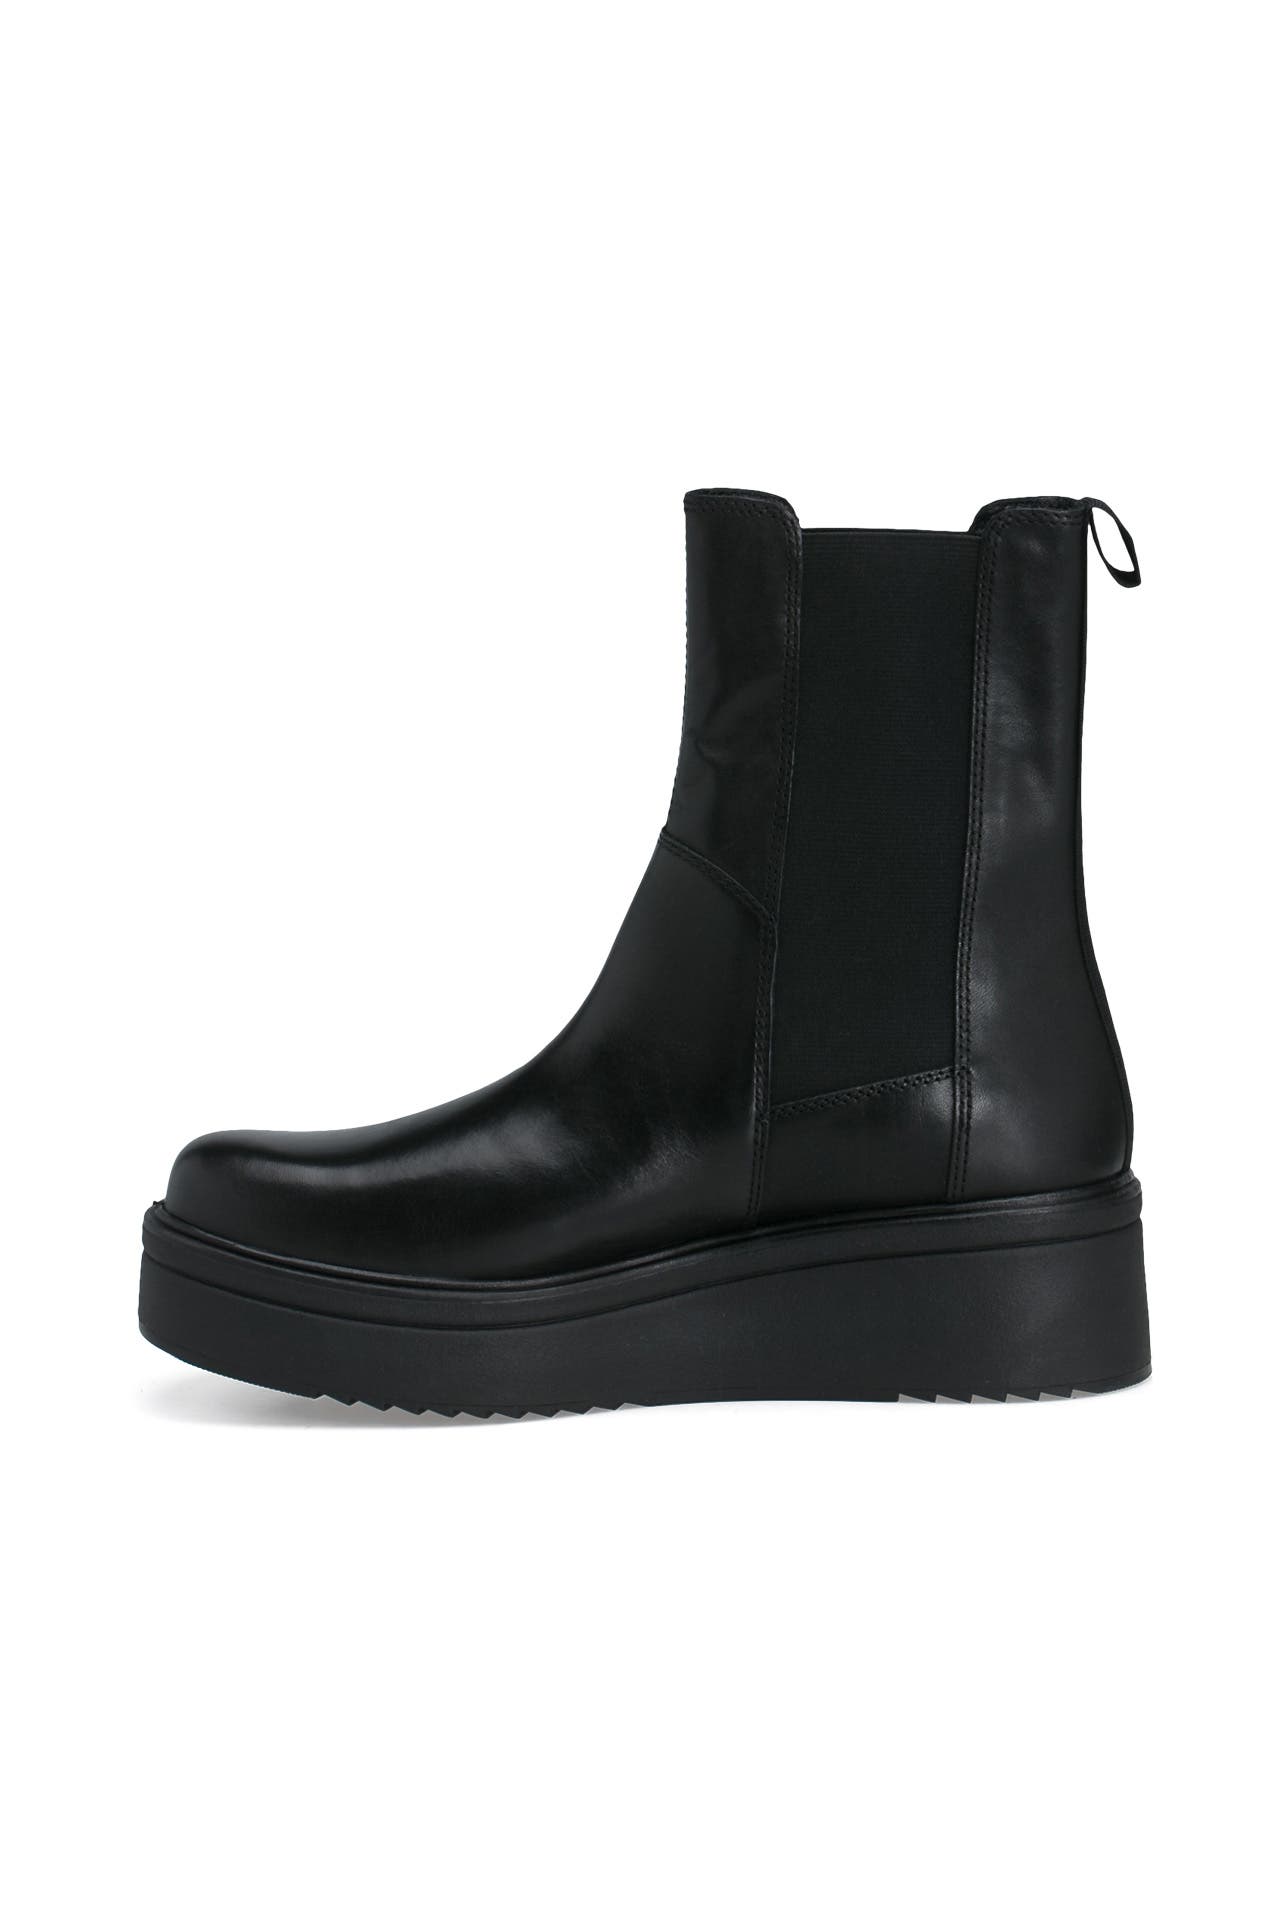 Chelsea-Boots schwarz VAGABOND » günstig online kaufen | Outletcity